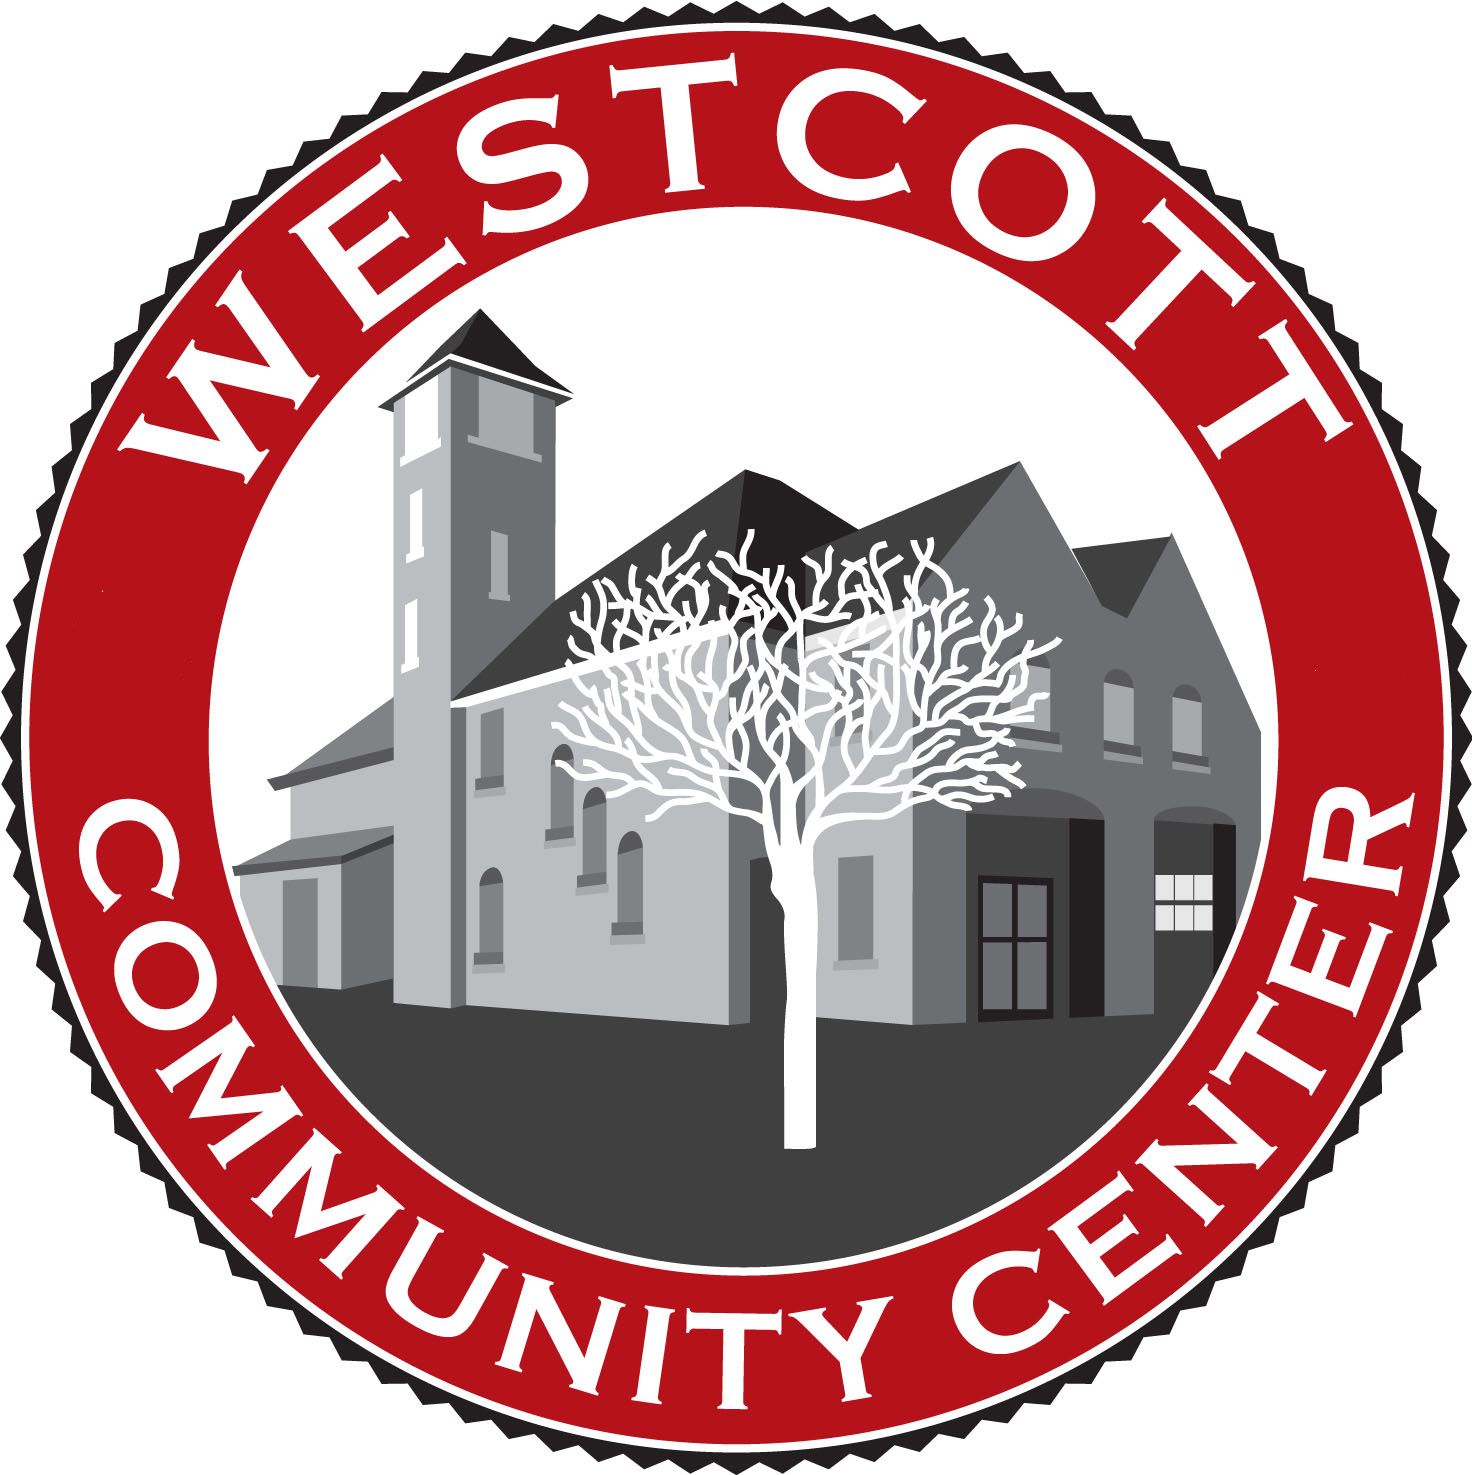 Westcott Community Center logo